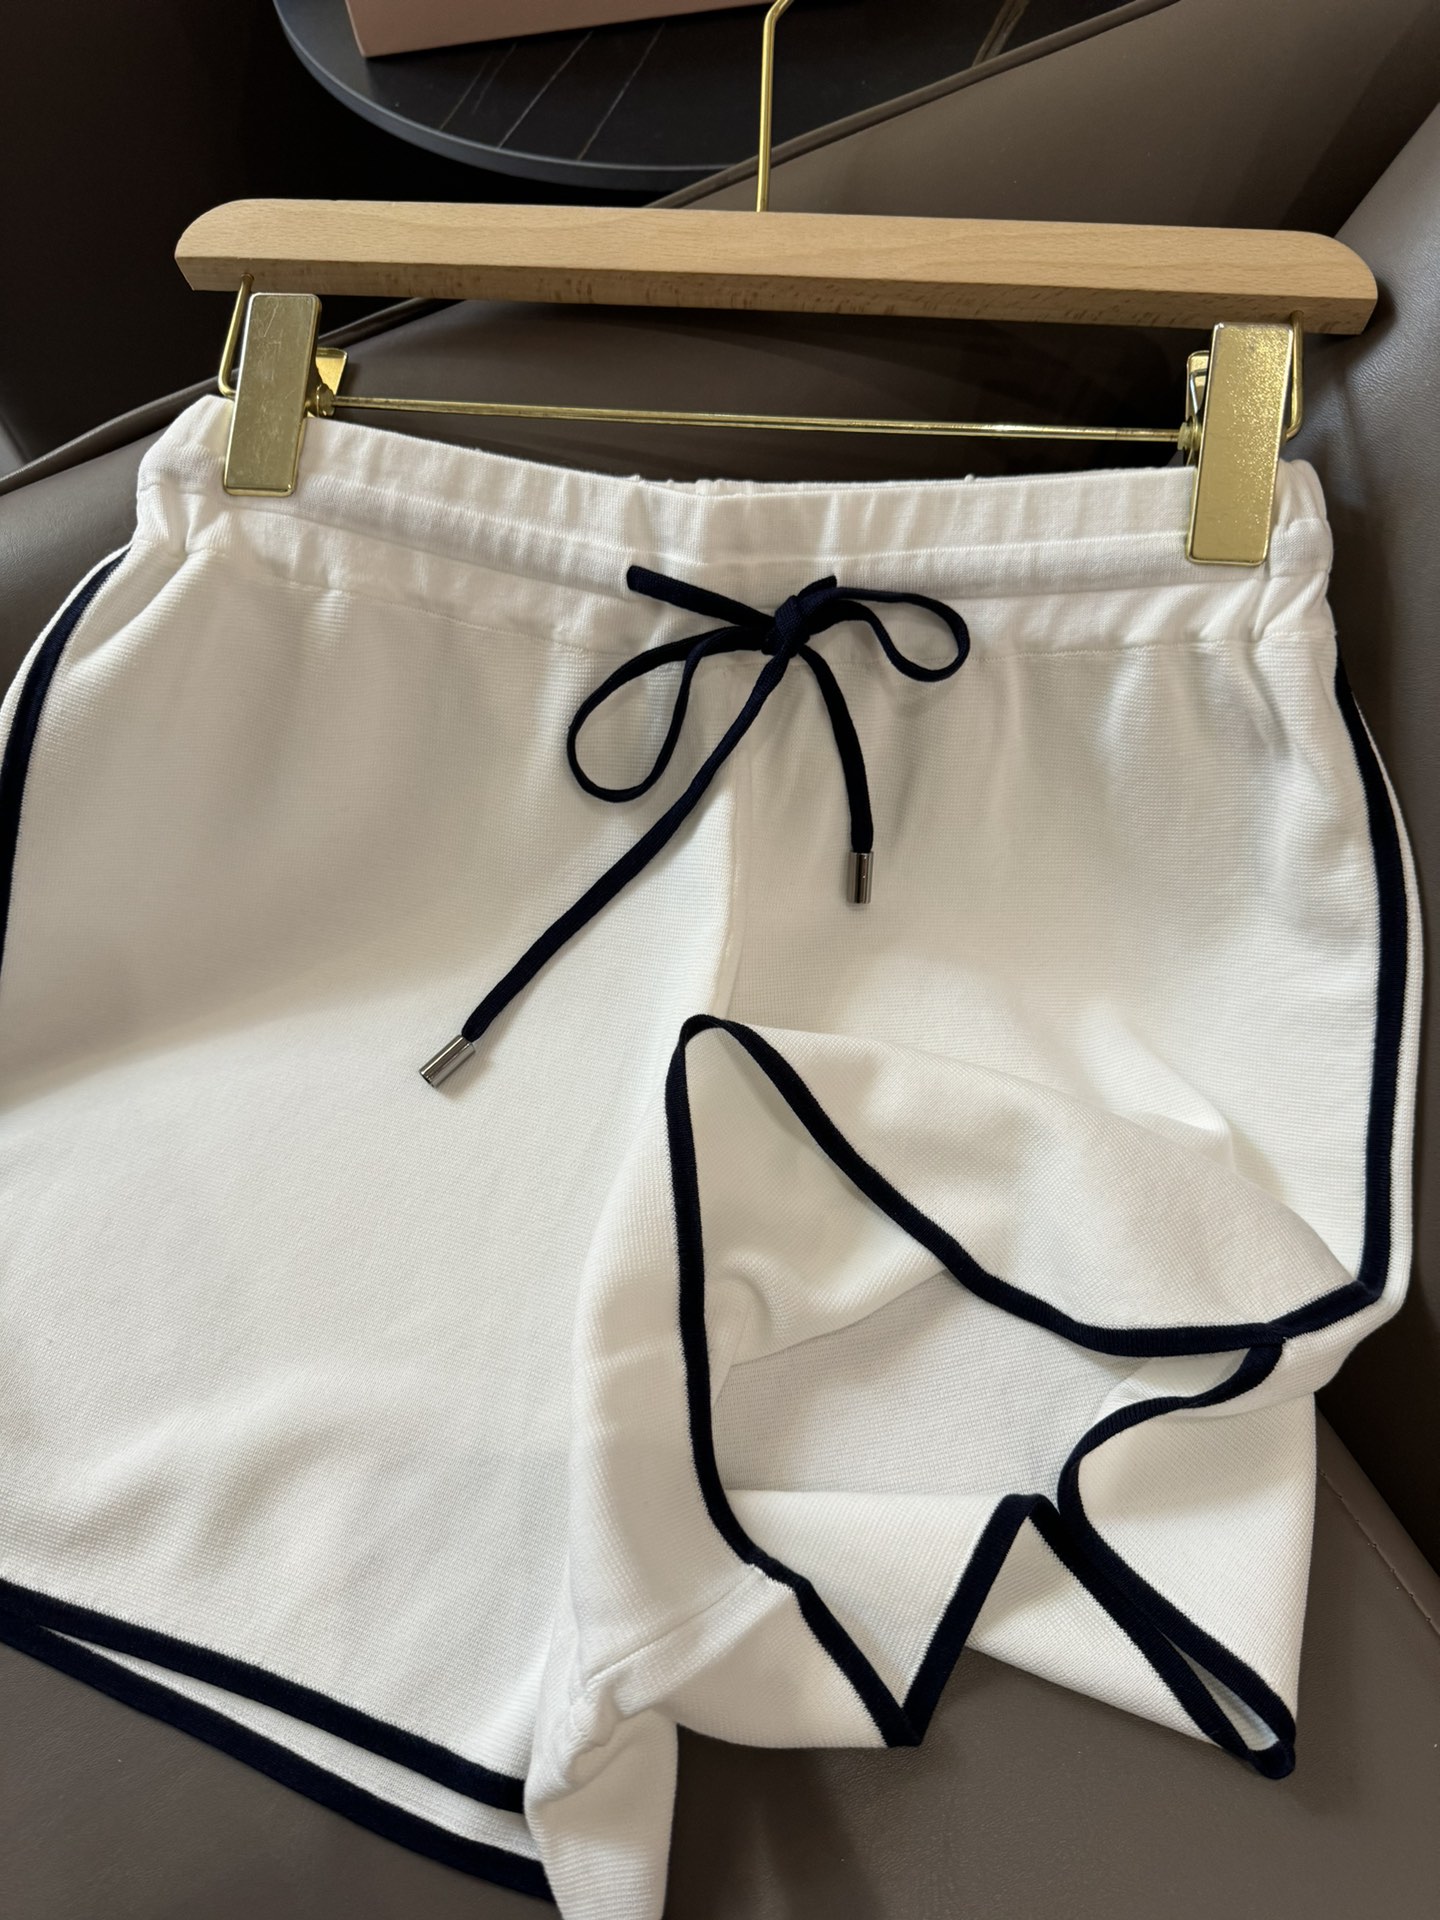 FBC008#新款套装BC棒球服系列天丝短袖针织上衣天丝针织短裤套装白色蓝色浅灰色SML